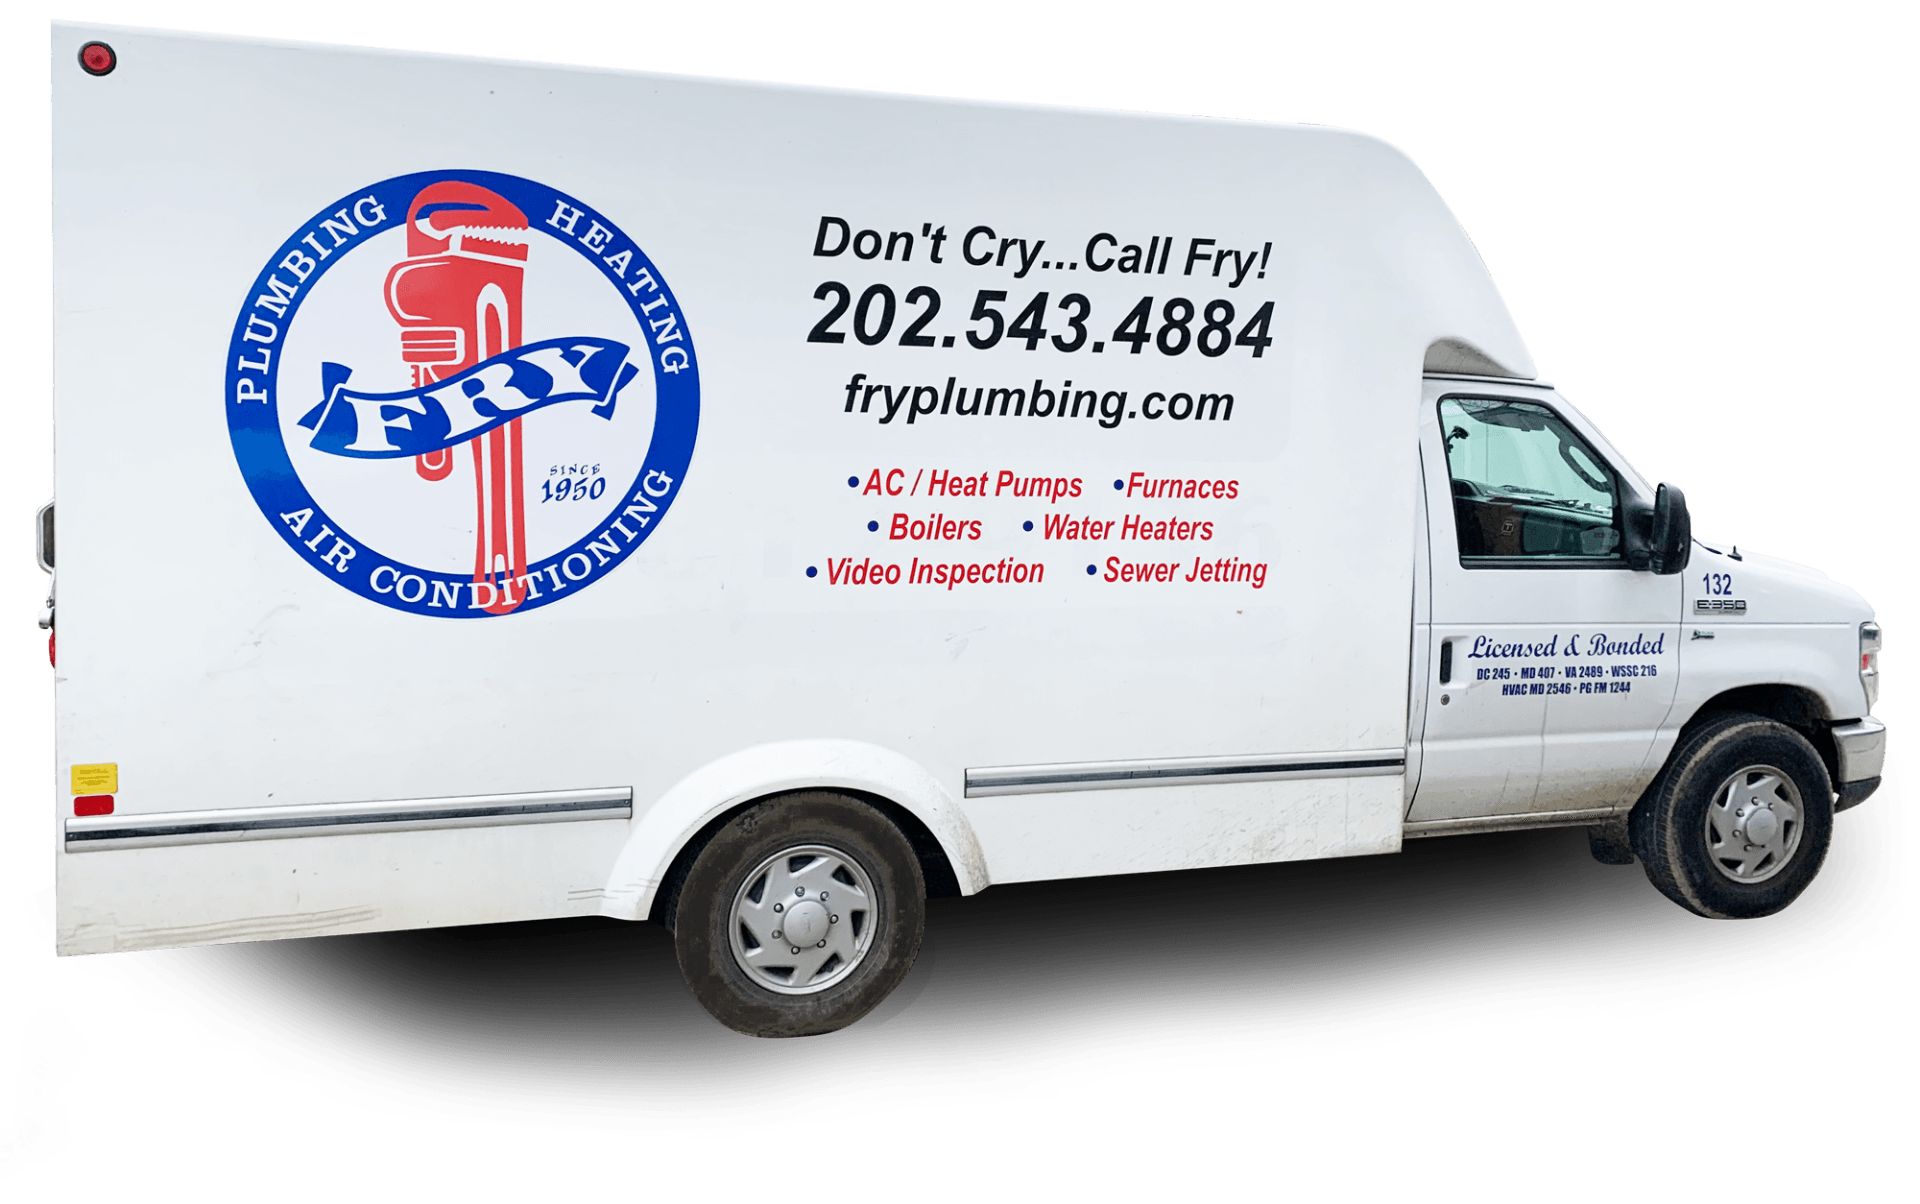 Fry Plumbing in DC Van